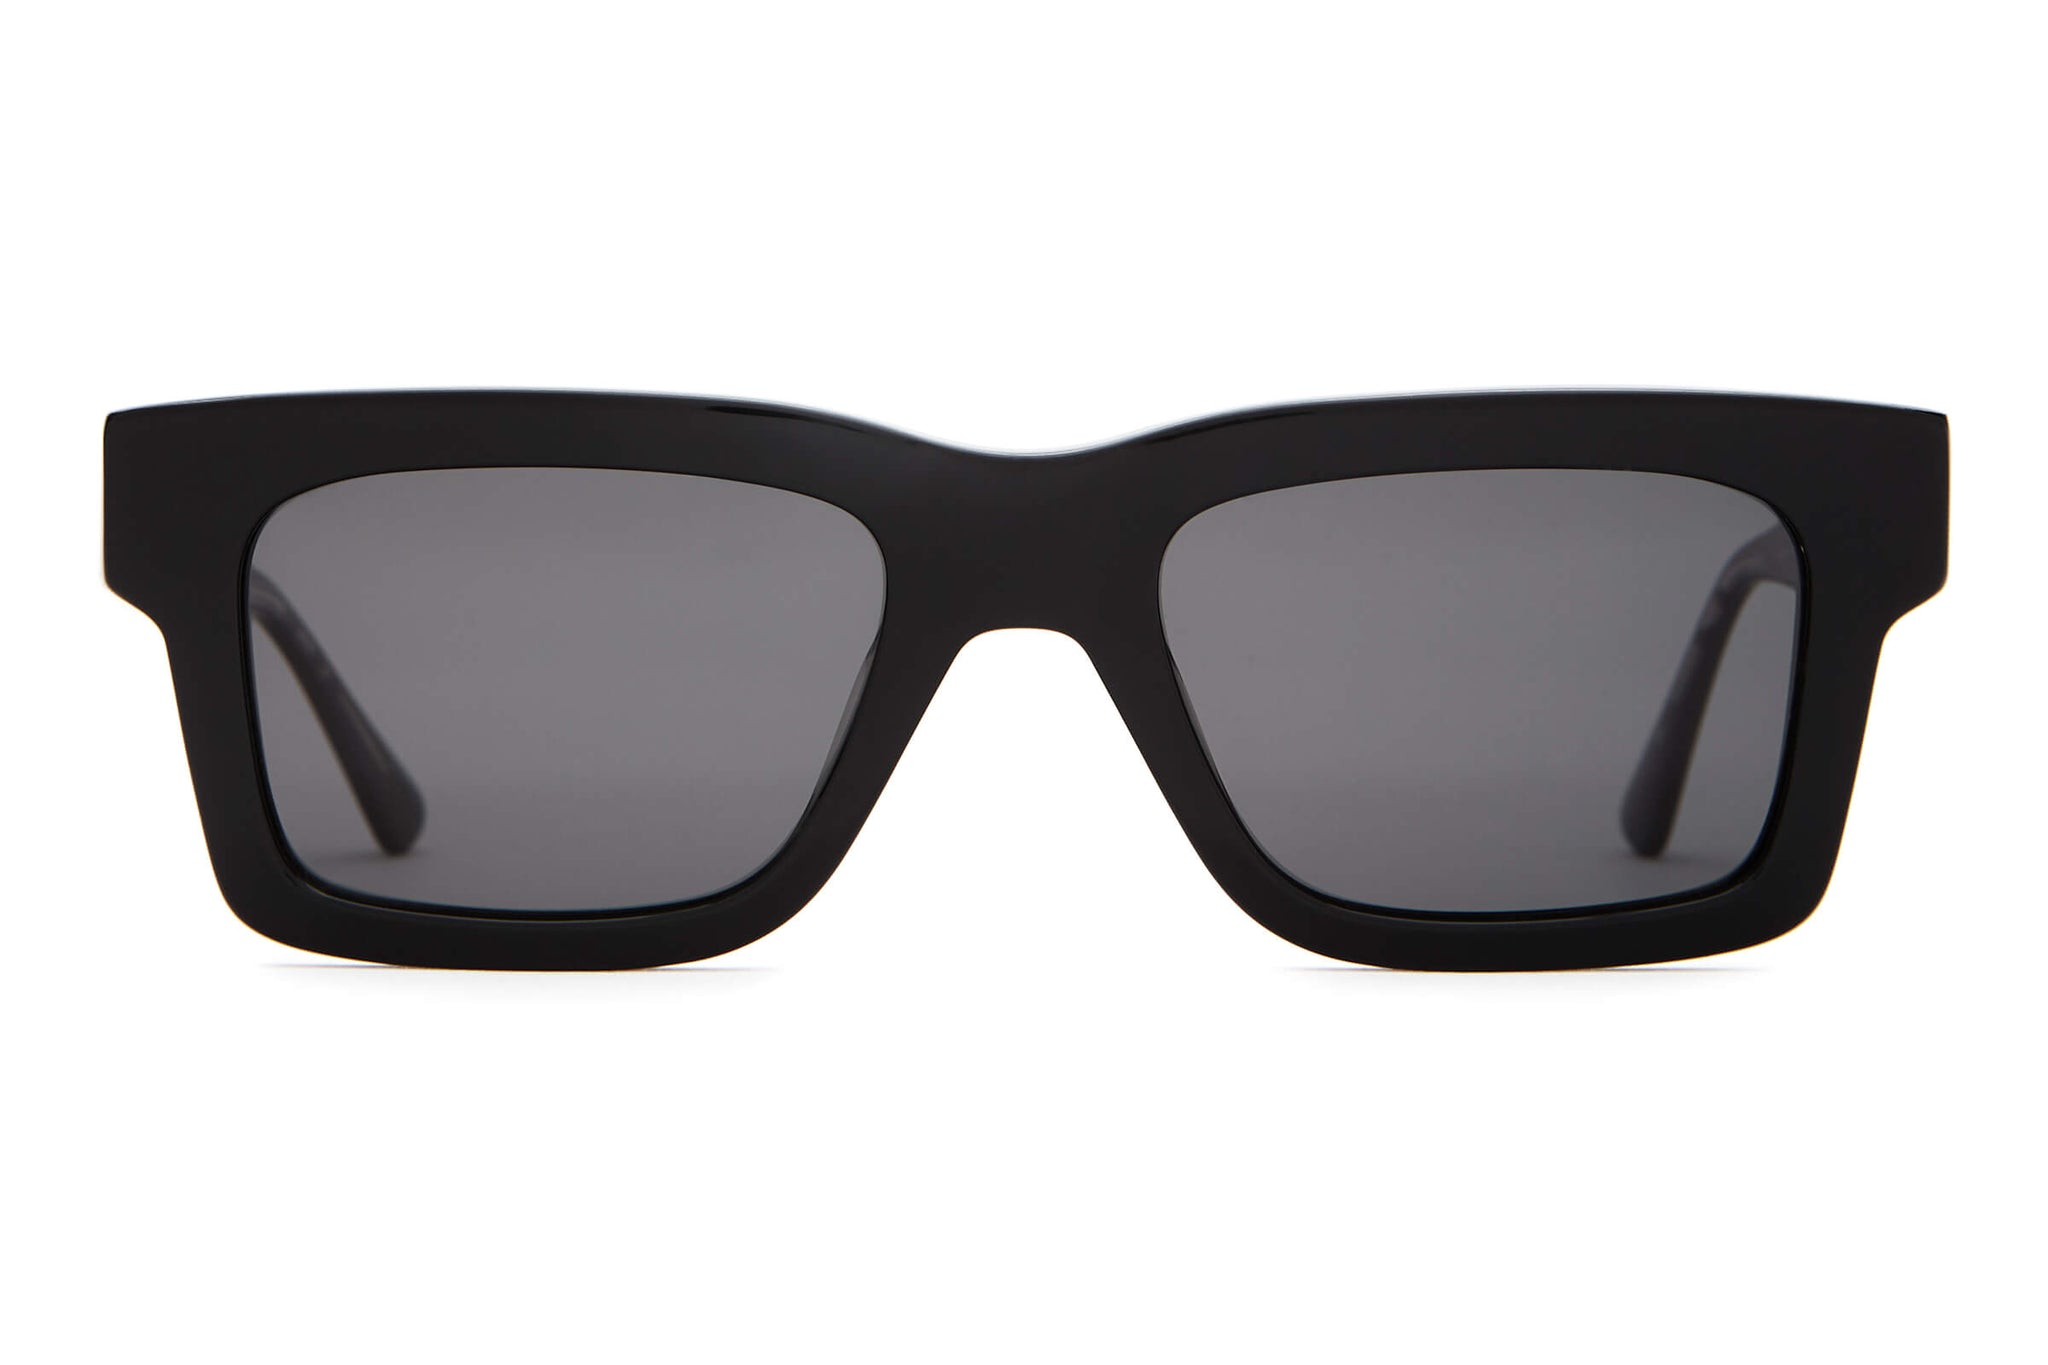 by Eyewear – Speedway Crap® | Polarized Crap Black Sunglasses Blake The Johnson Eyewear